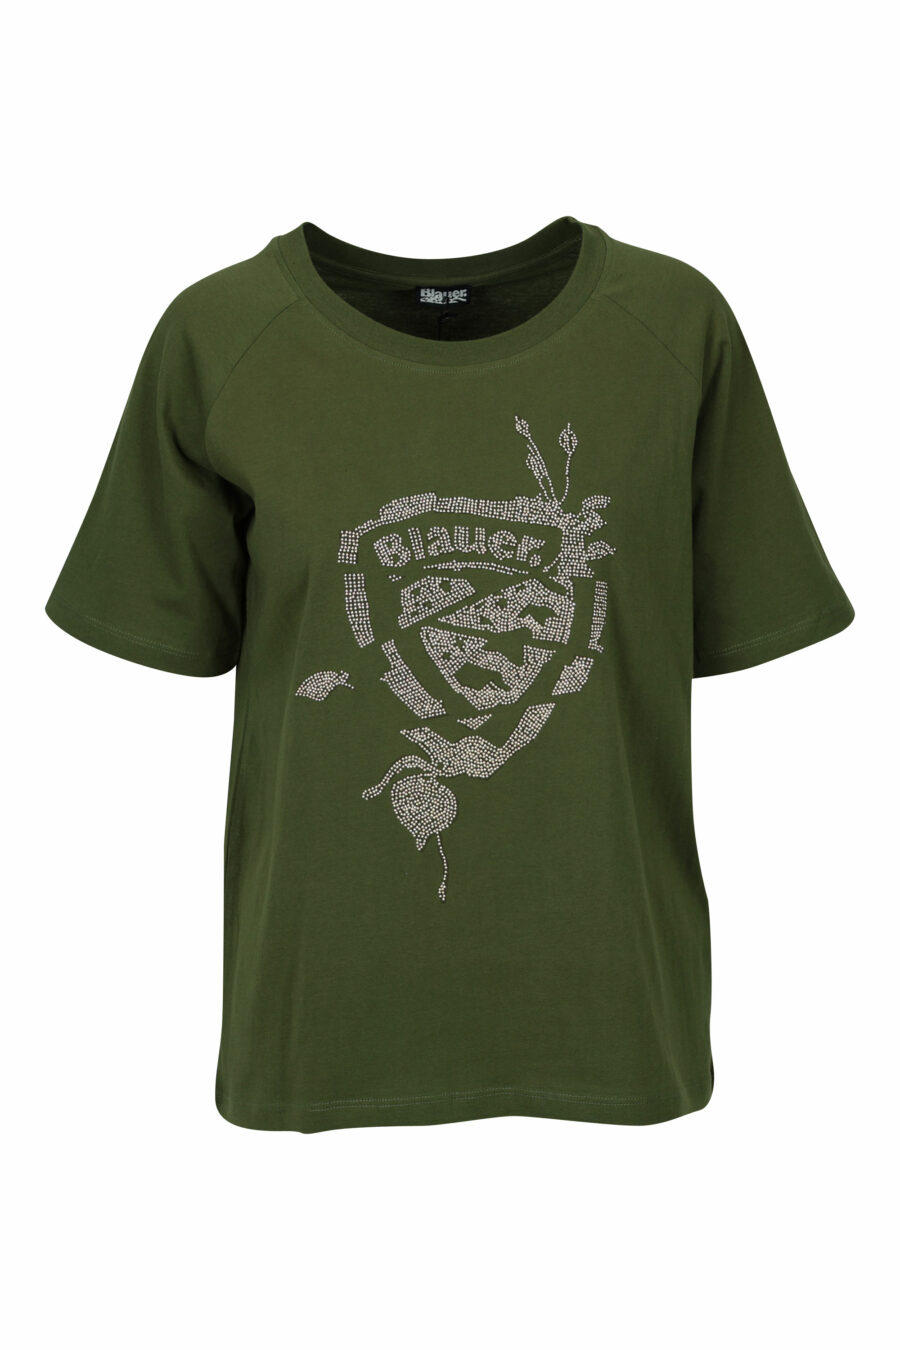 Camiseta verde militar con maxilogo parche dorado - 8058610852832